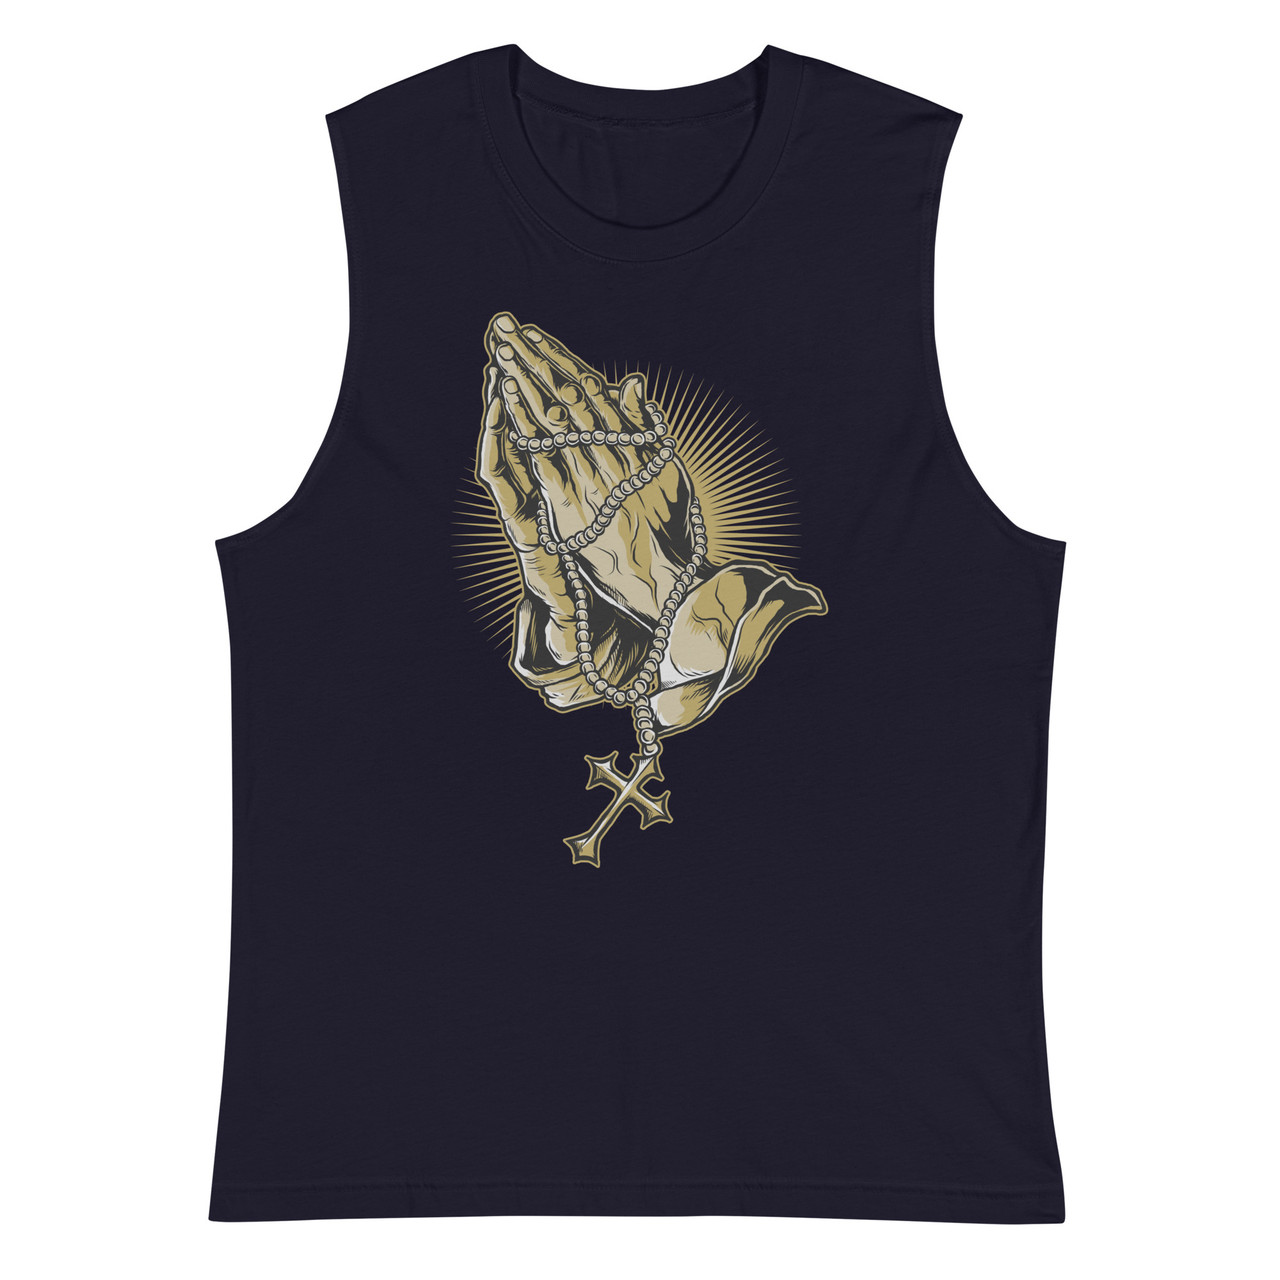 Hands of Prayer Unisex Muscle Shirt - Bella + Canvas 3483 